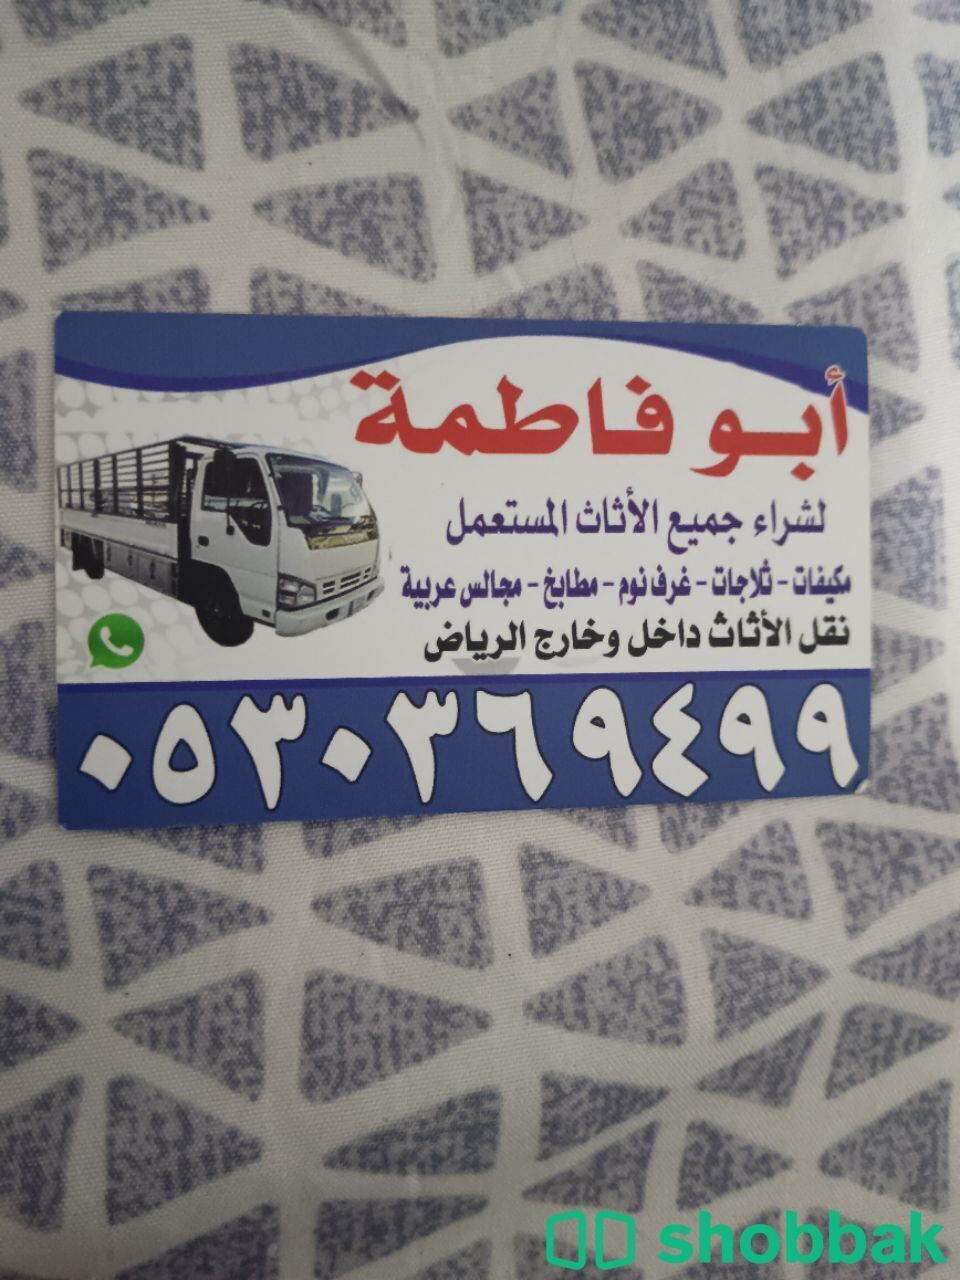 شراء أثاث مستعمل حي ظهرة نمار 0530369499  Shobbak Saudi Arabia